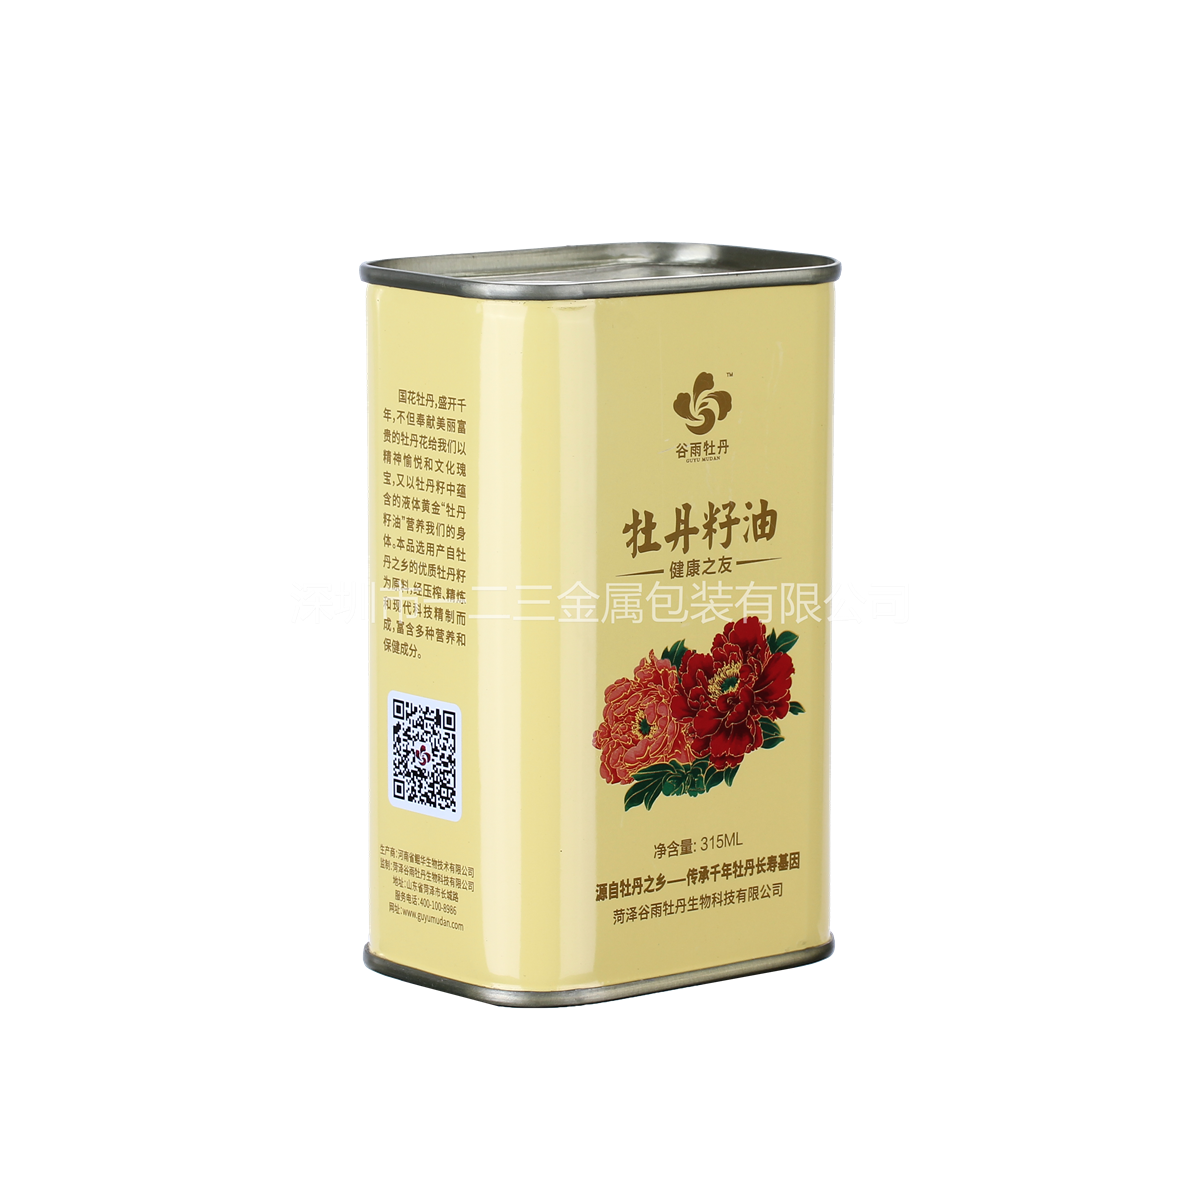 5L高山茶籽油铁罐 茶籽油包装设计 **润滑油铁罐 深圳制罐厂